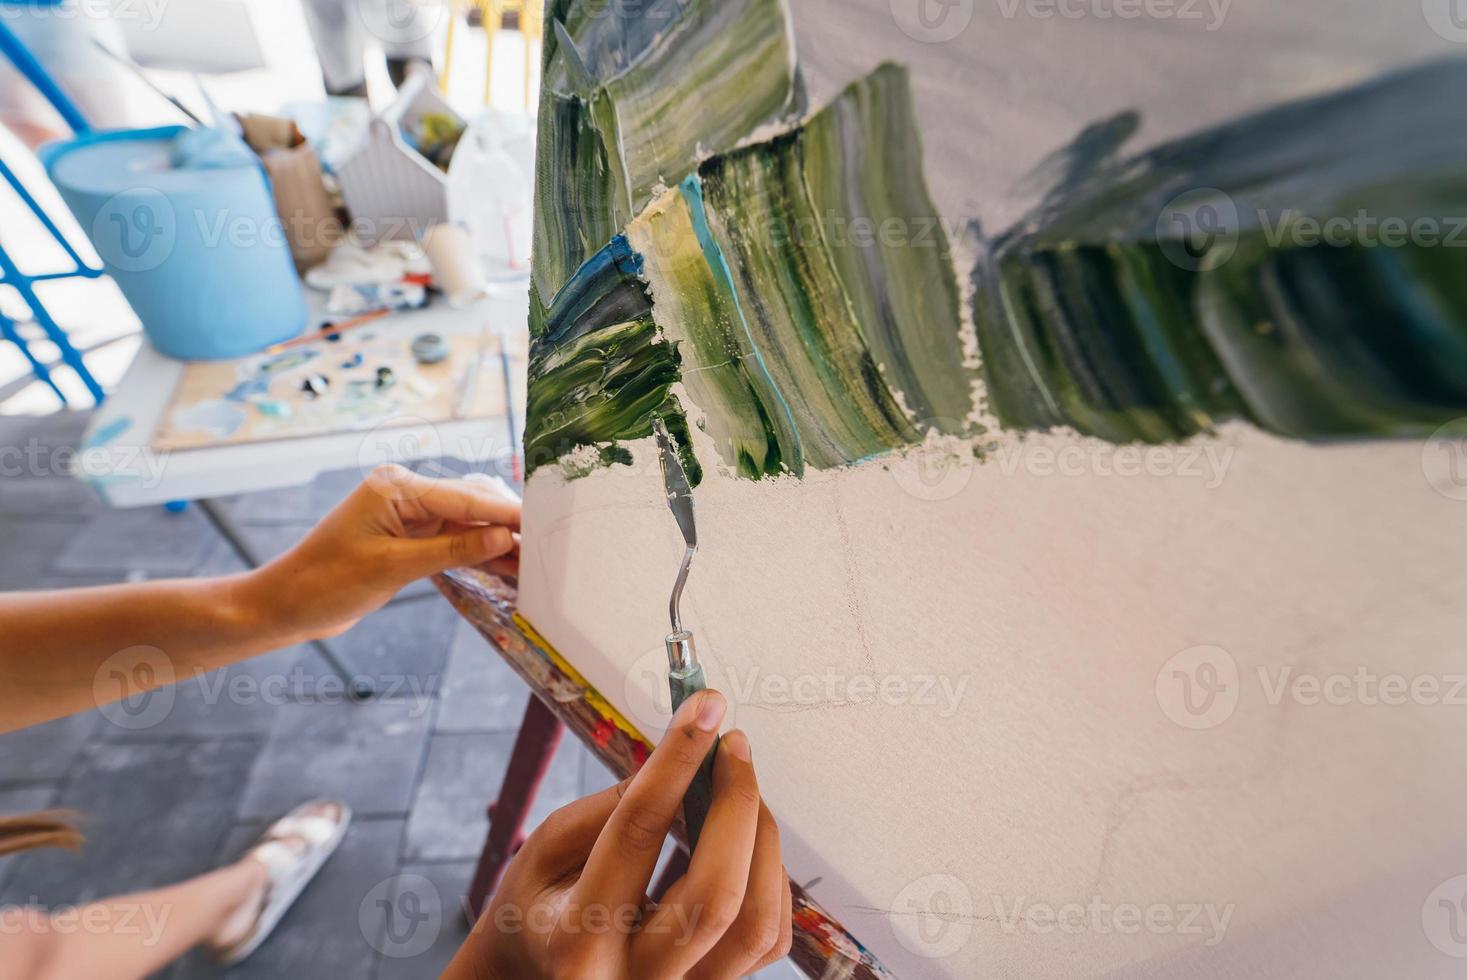 gros plan de la main d'une femme appliquant de la peinture sur une toile photo